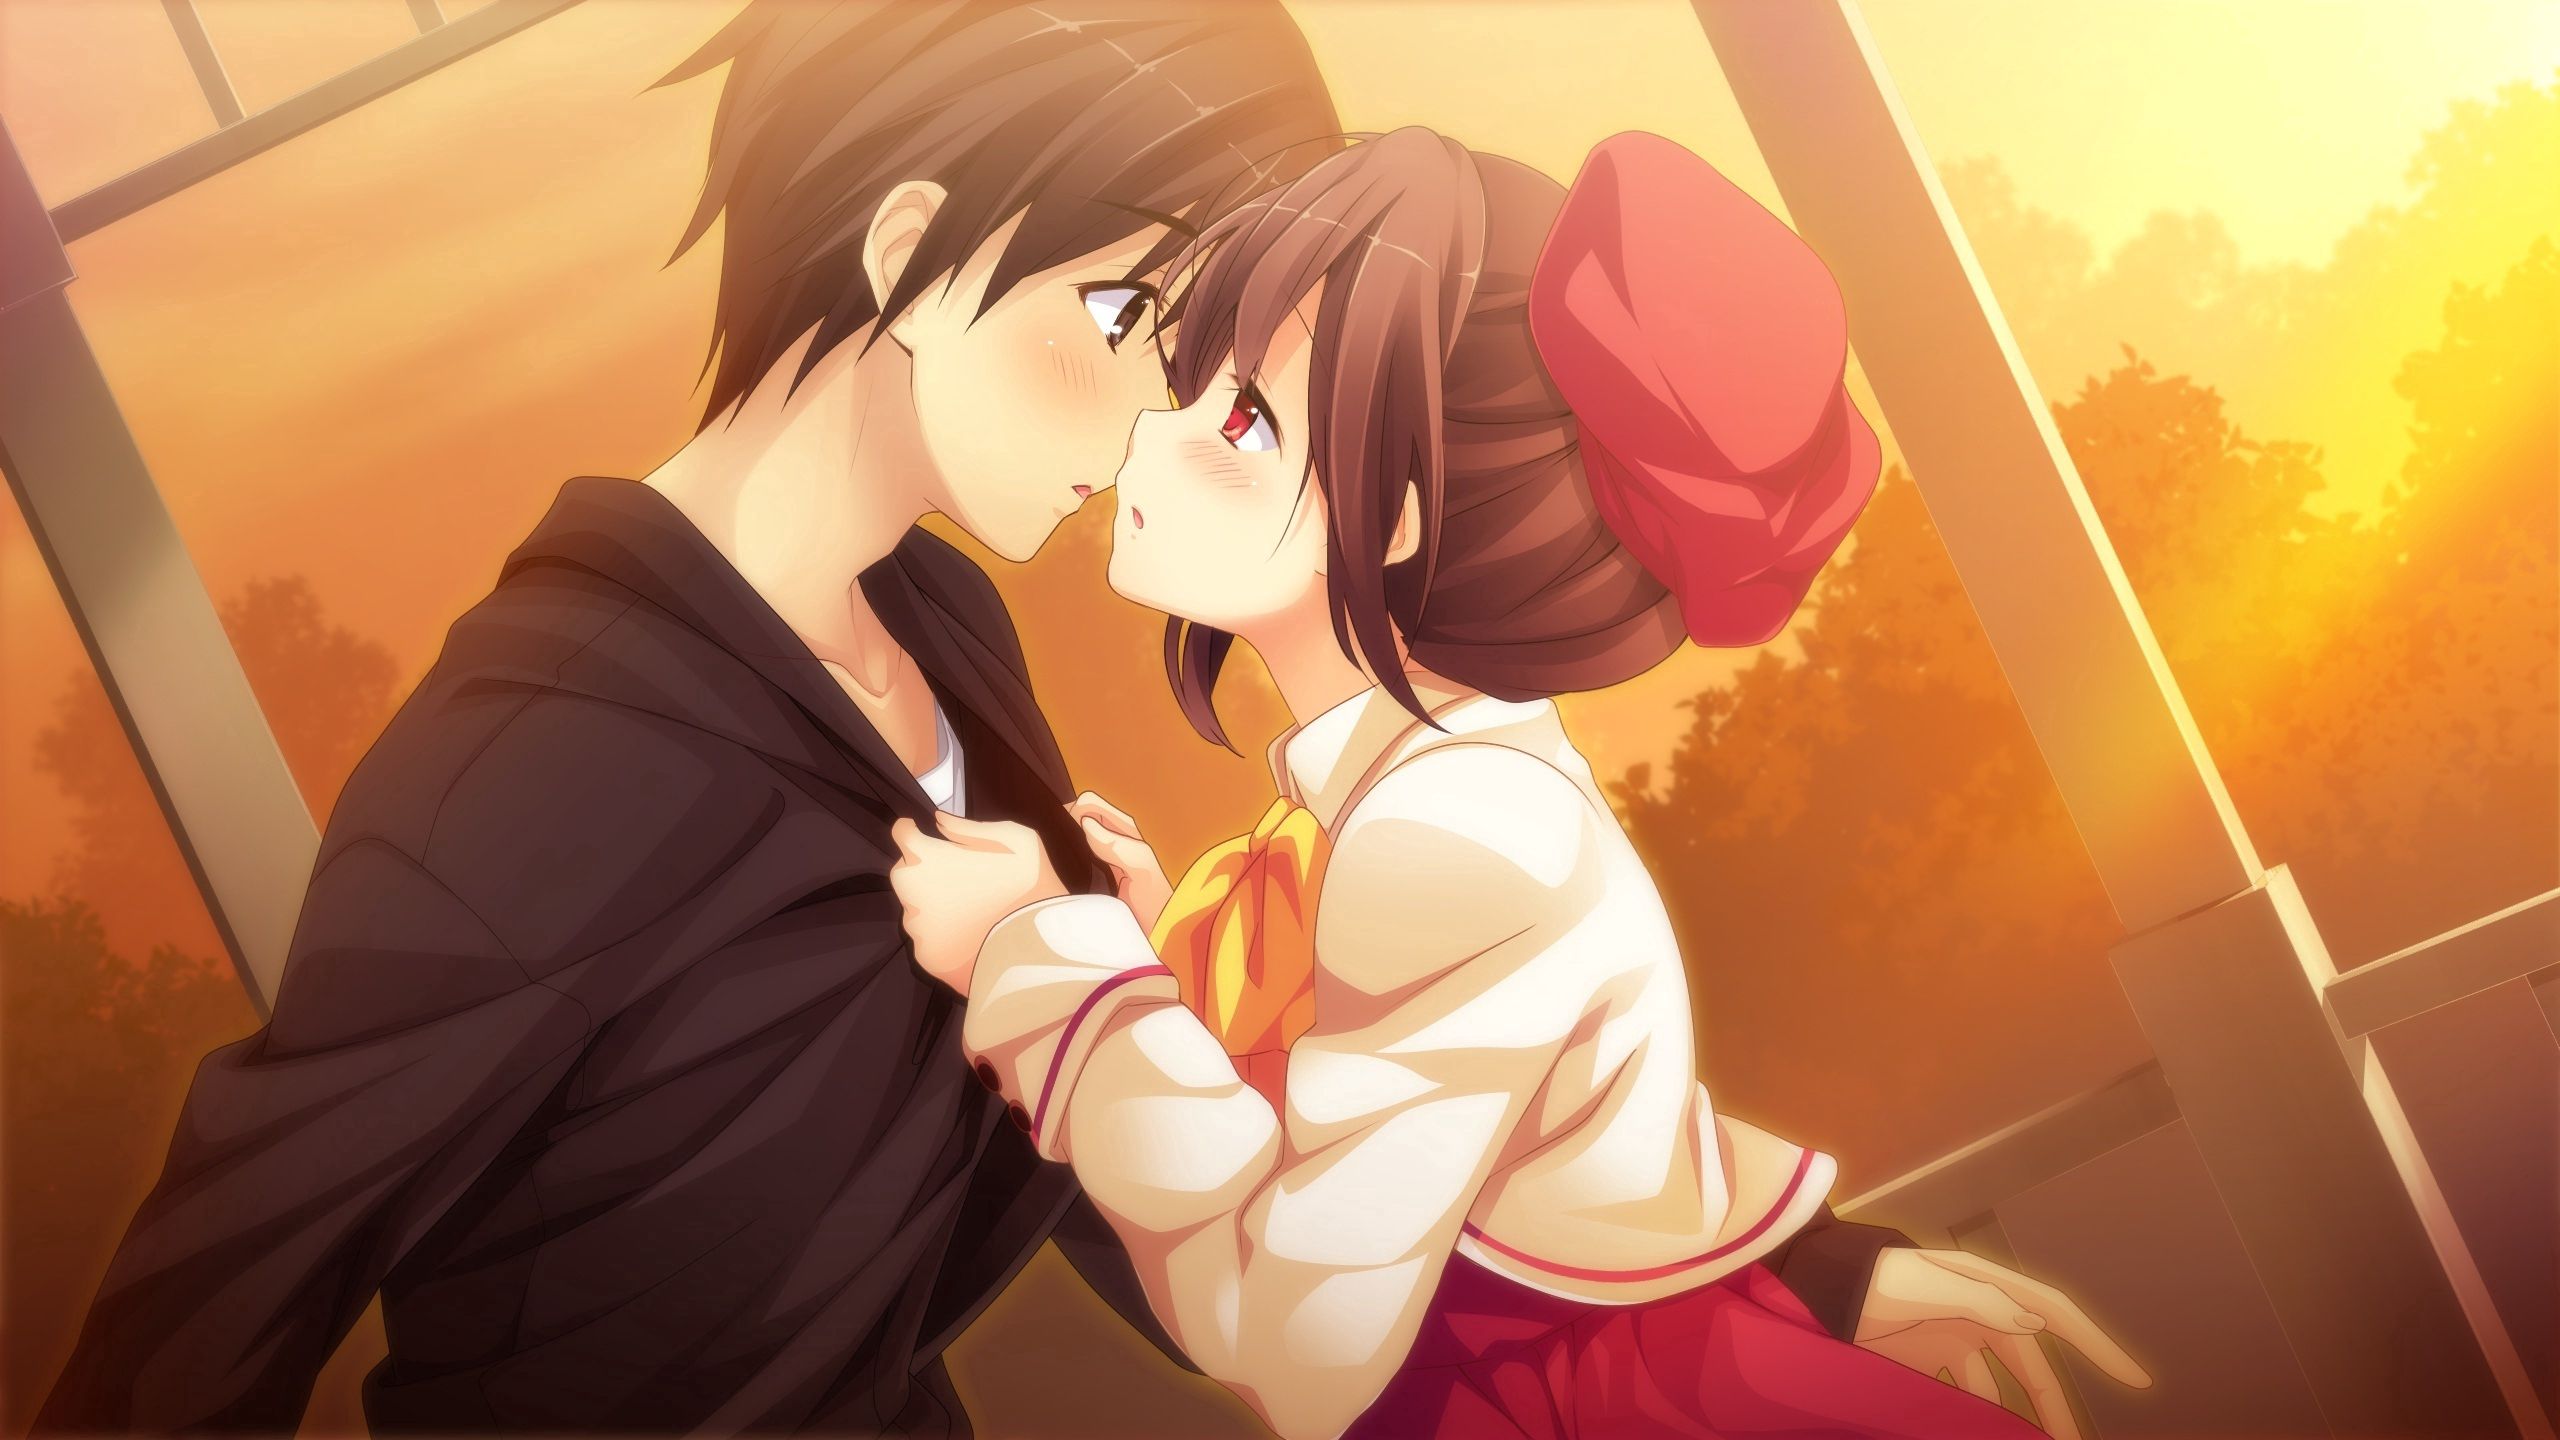 kiss, couple, pair, guy, girl, anime, sunset, art wallpaper for mobile